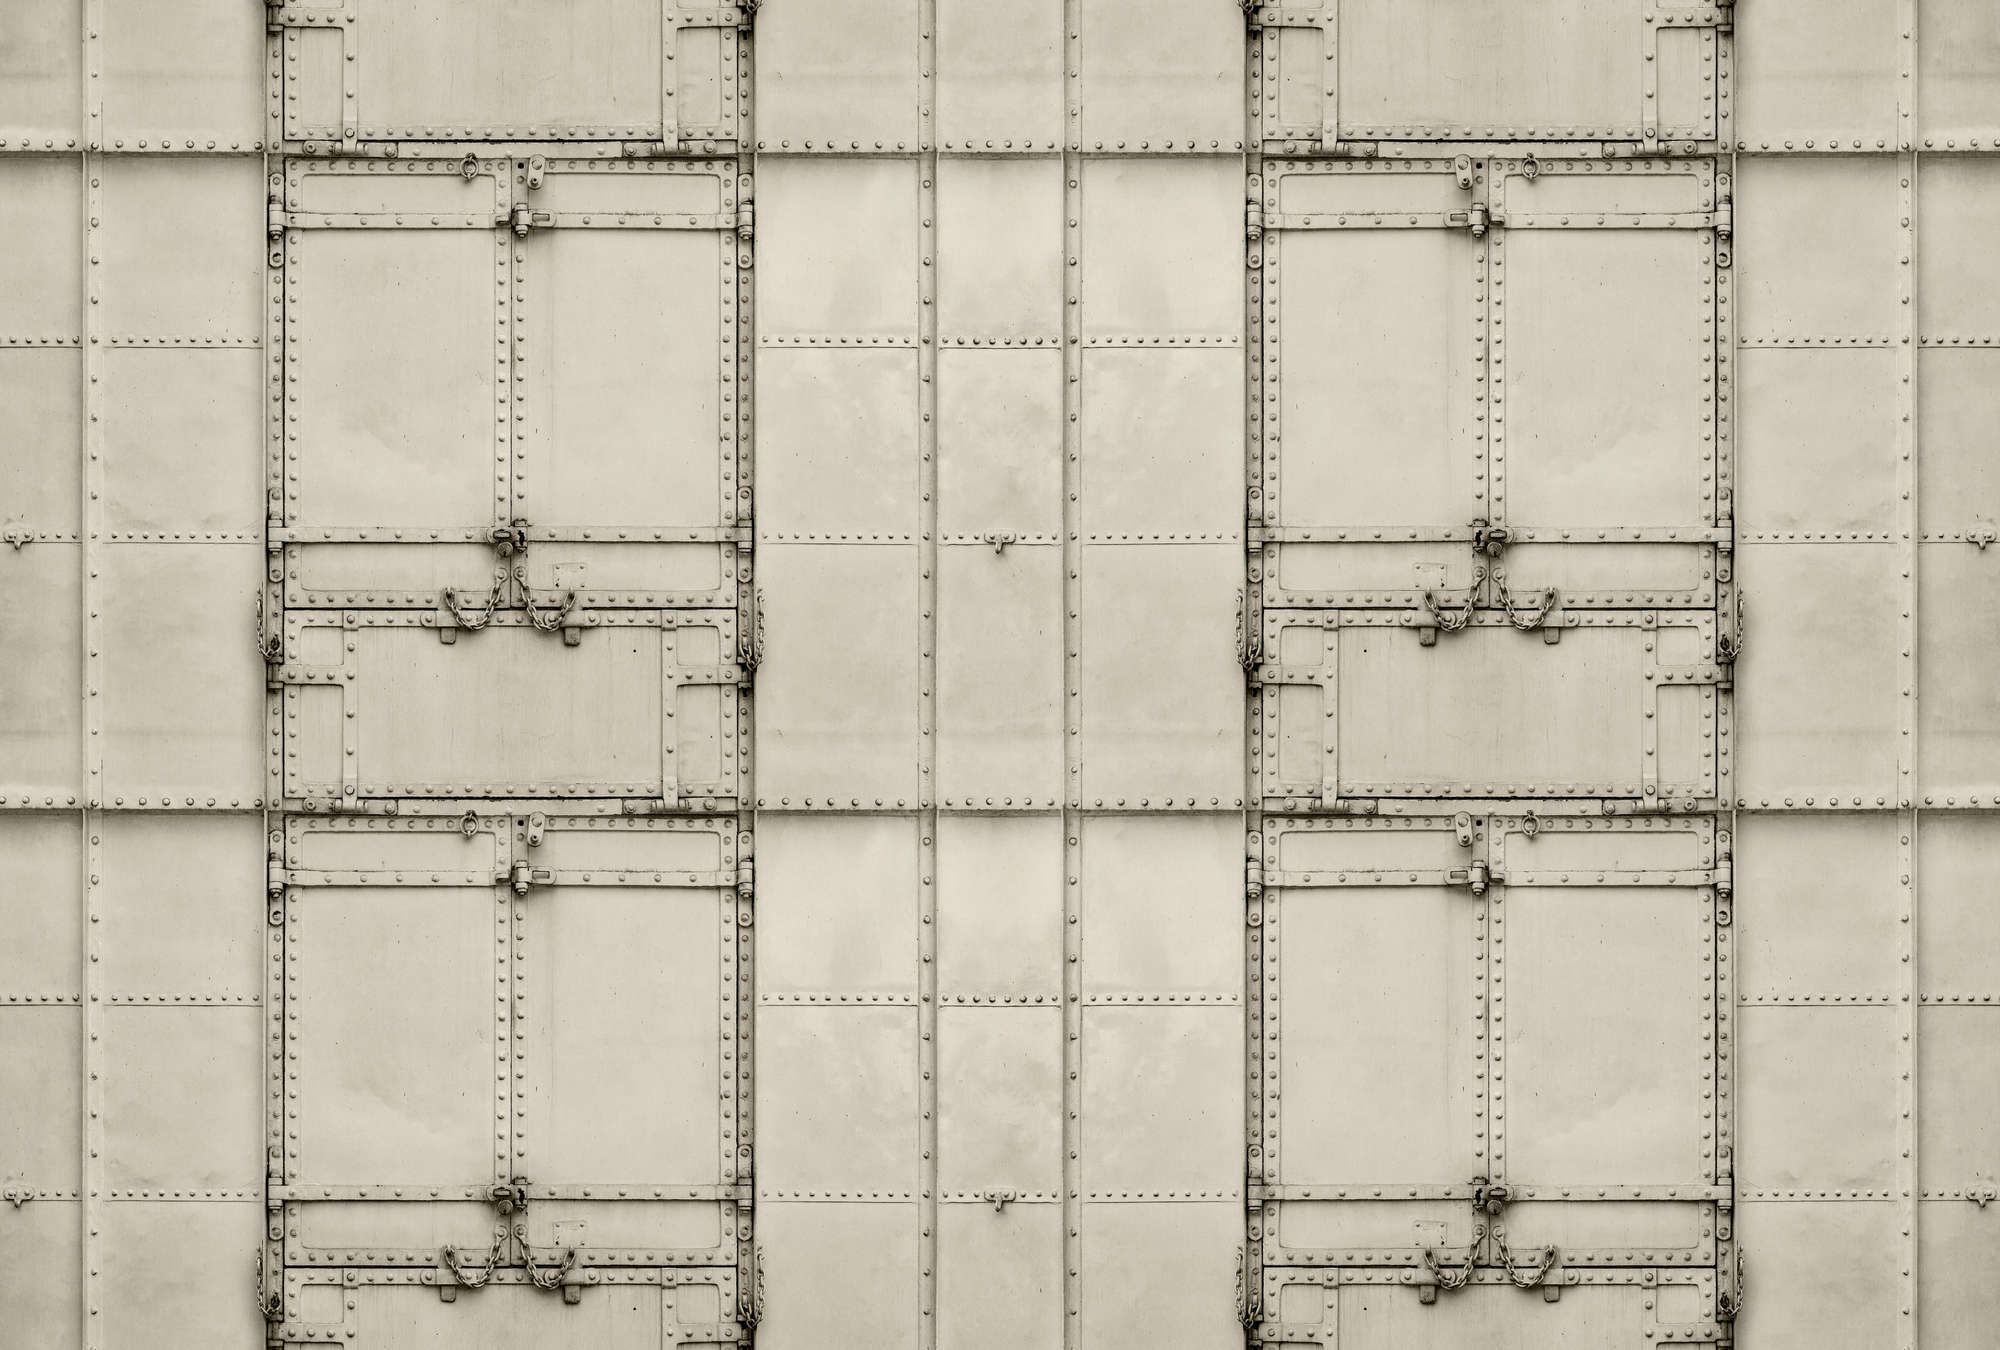             Fotomural »madurai« - Diseño patchwork con placas de metal con remaches y cadenas - Material no tejido de textura ligera
        